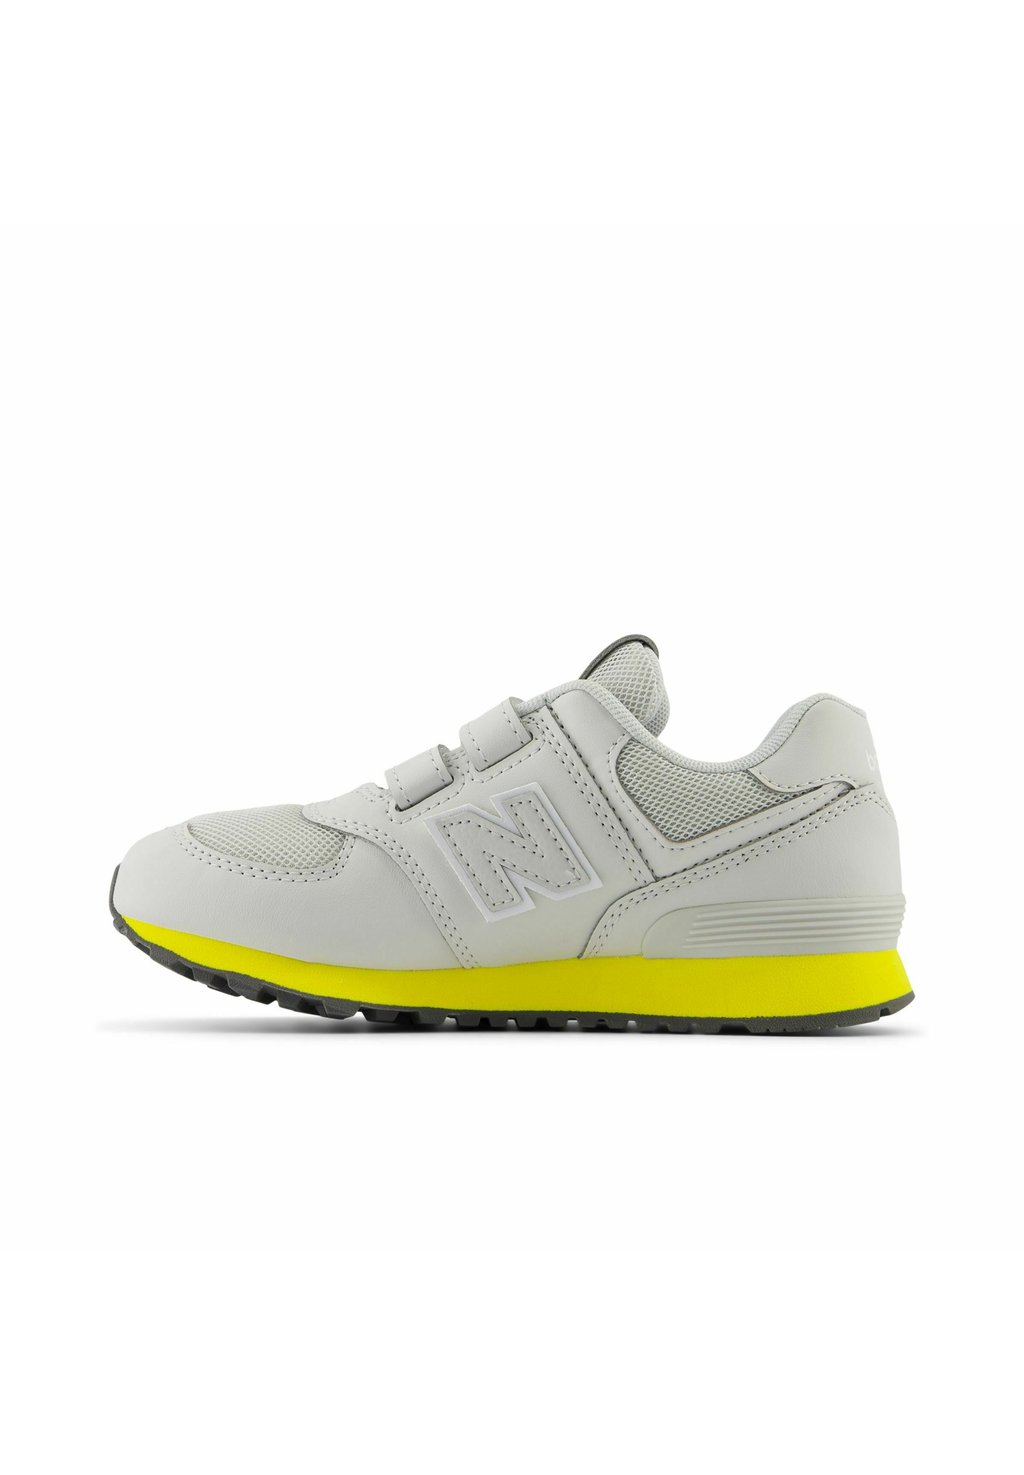 Прогулочная обувь HOOK & LOOP. New Balance, цвет grey matter lemon zest